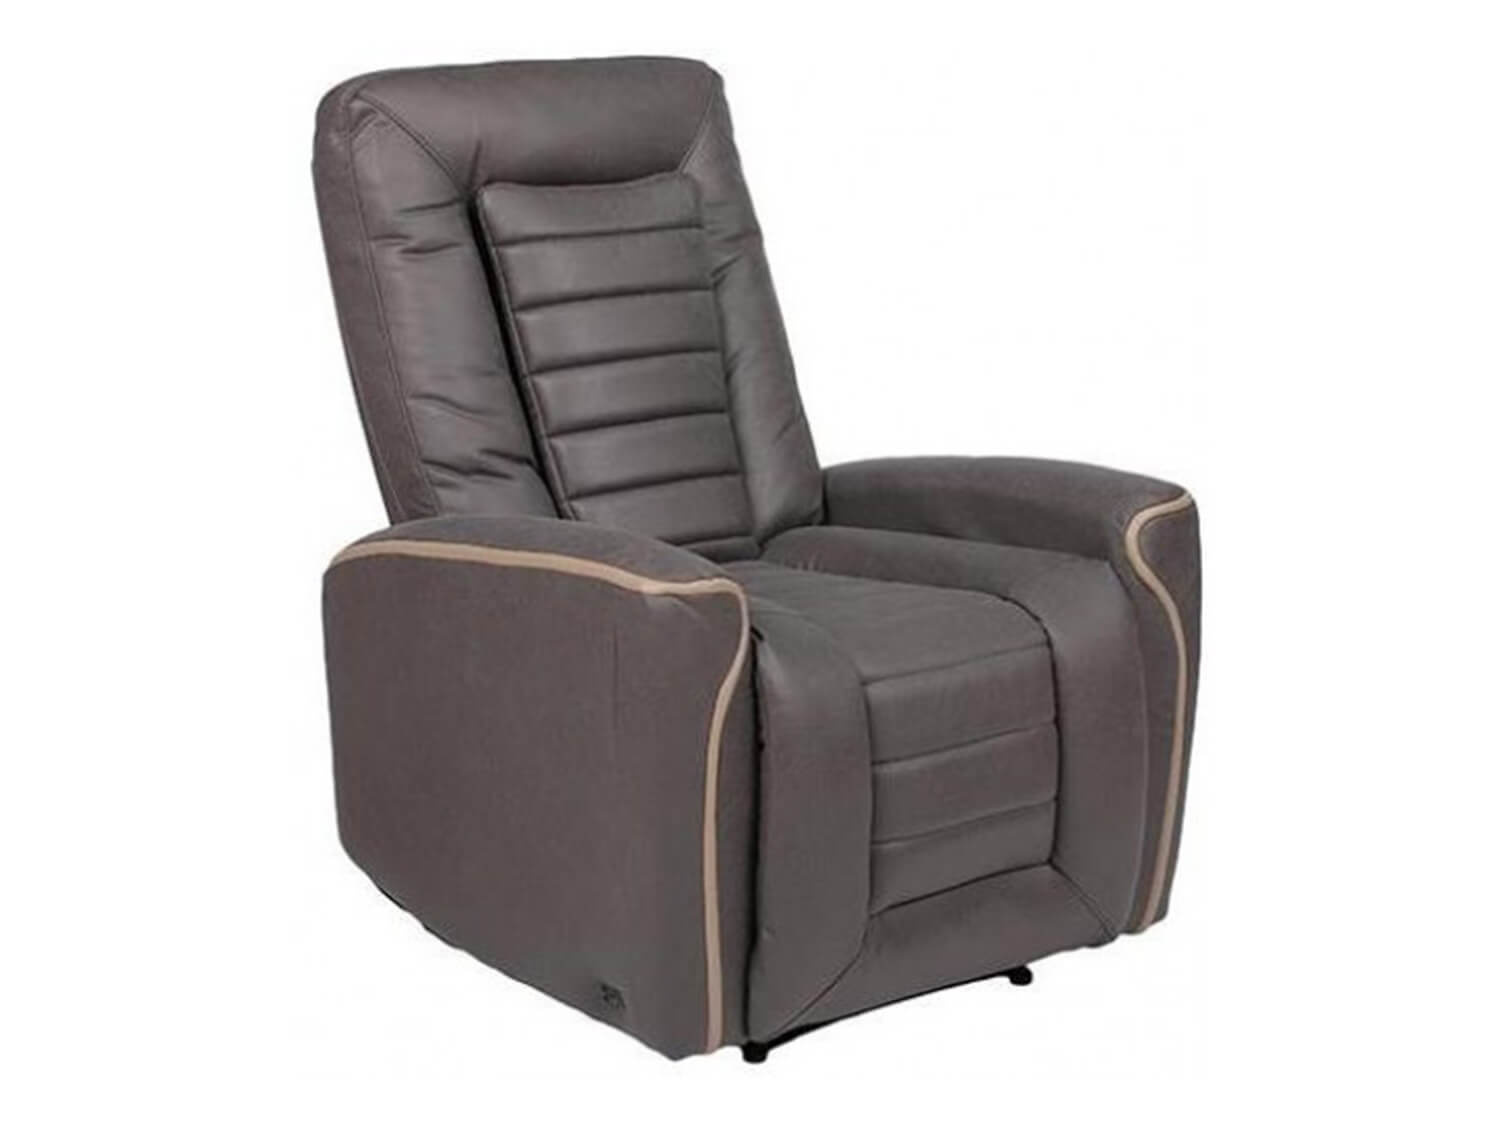 EGO Recline Chair 3001 Серый макс. вес пользователя, кг - 120